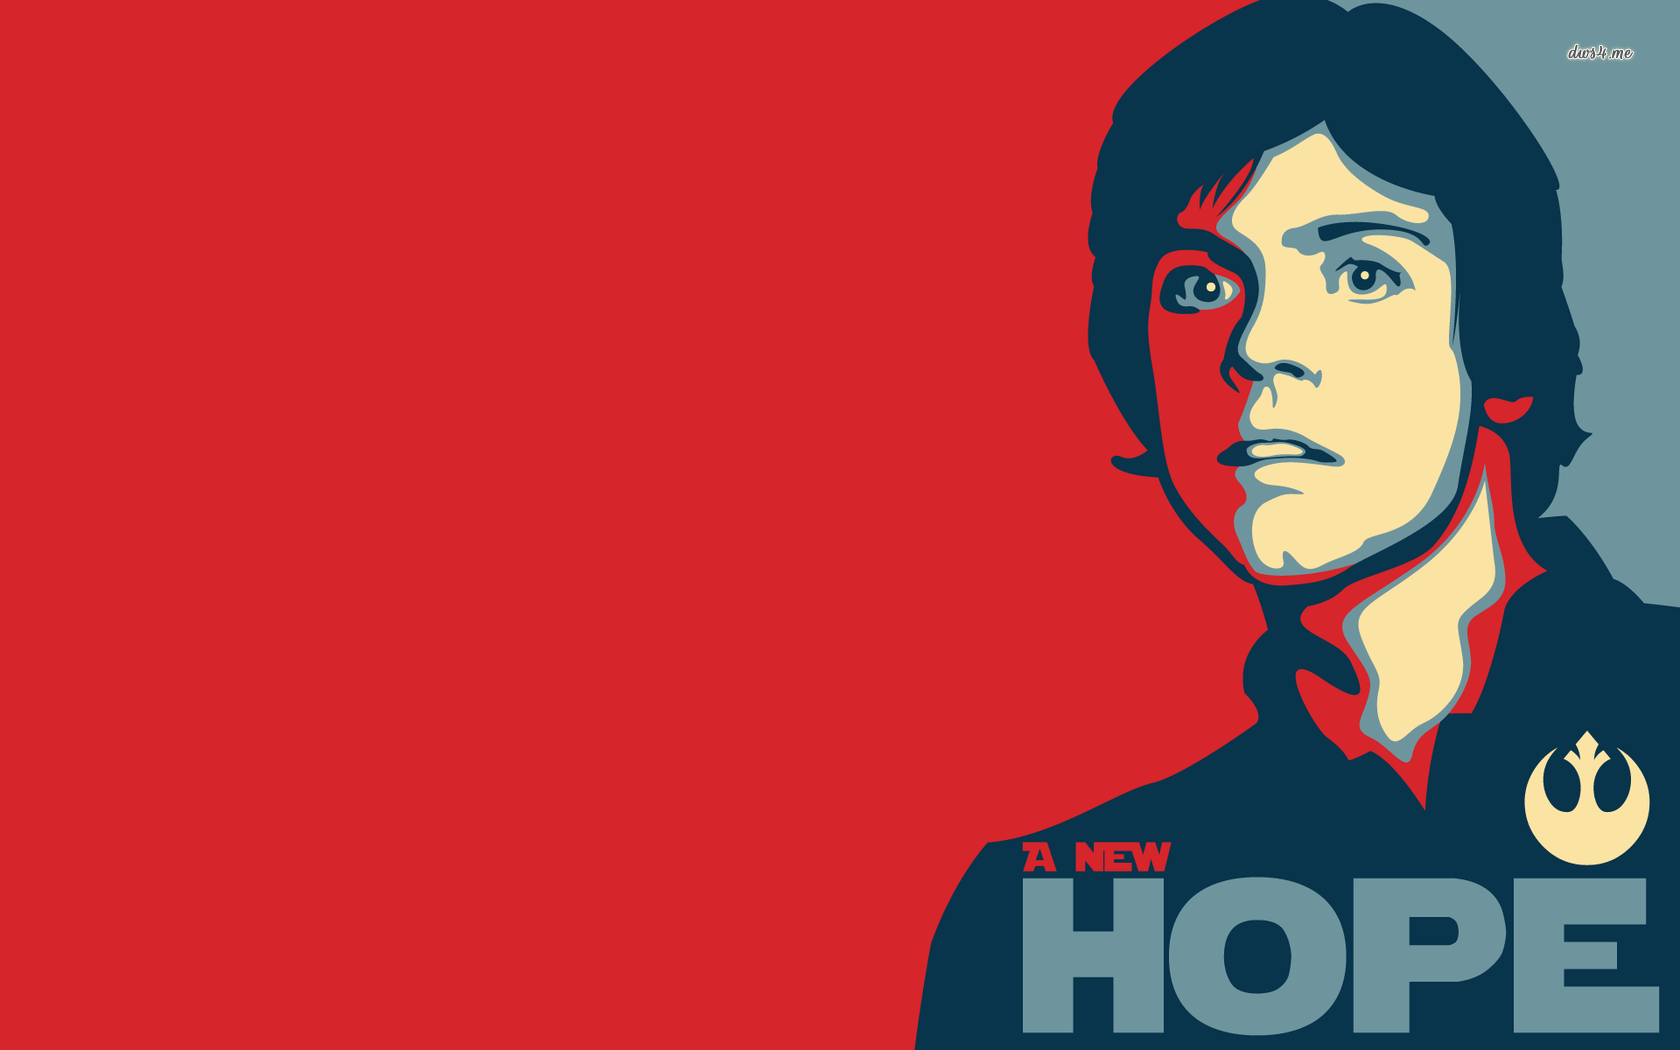 A new hope, Luke Skywalker Wars wallpaper